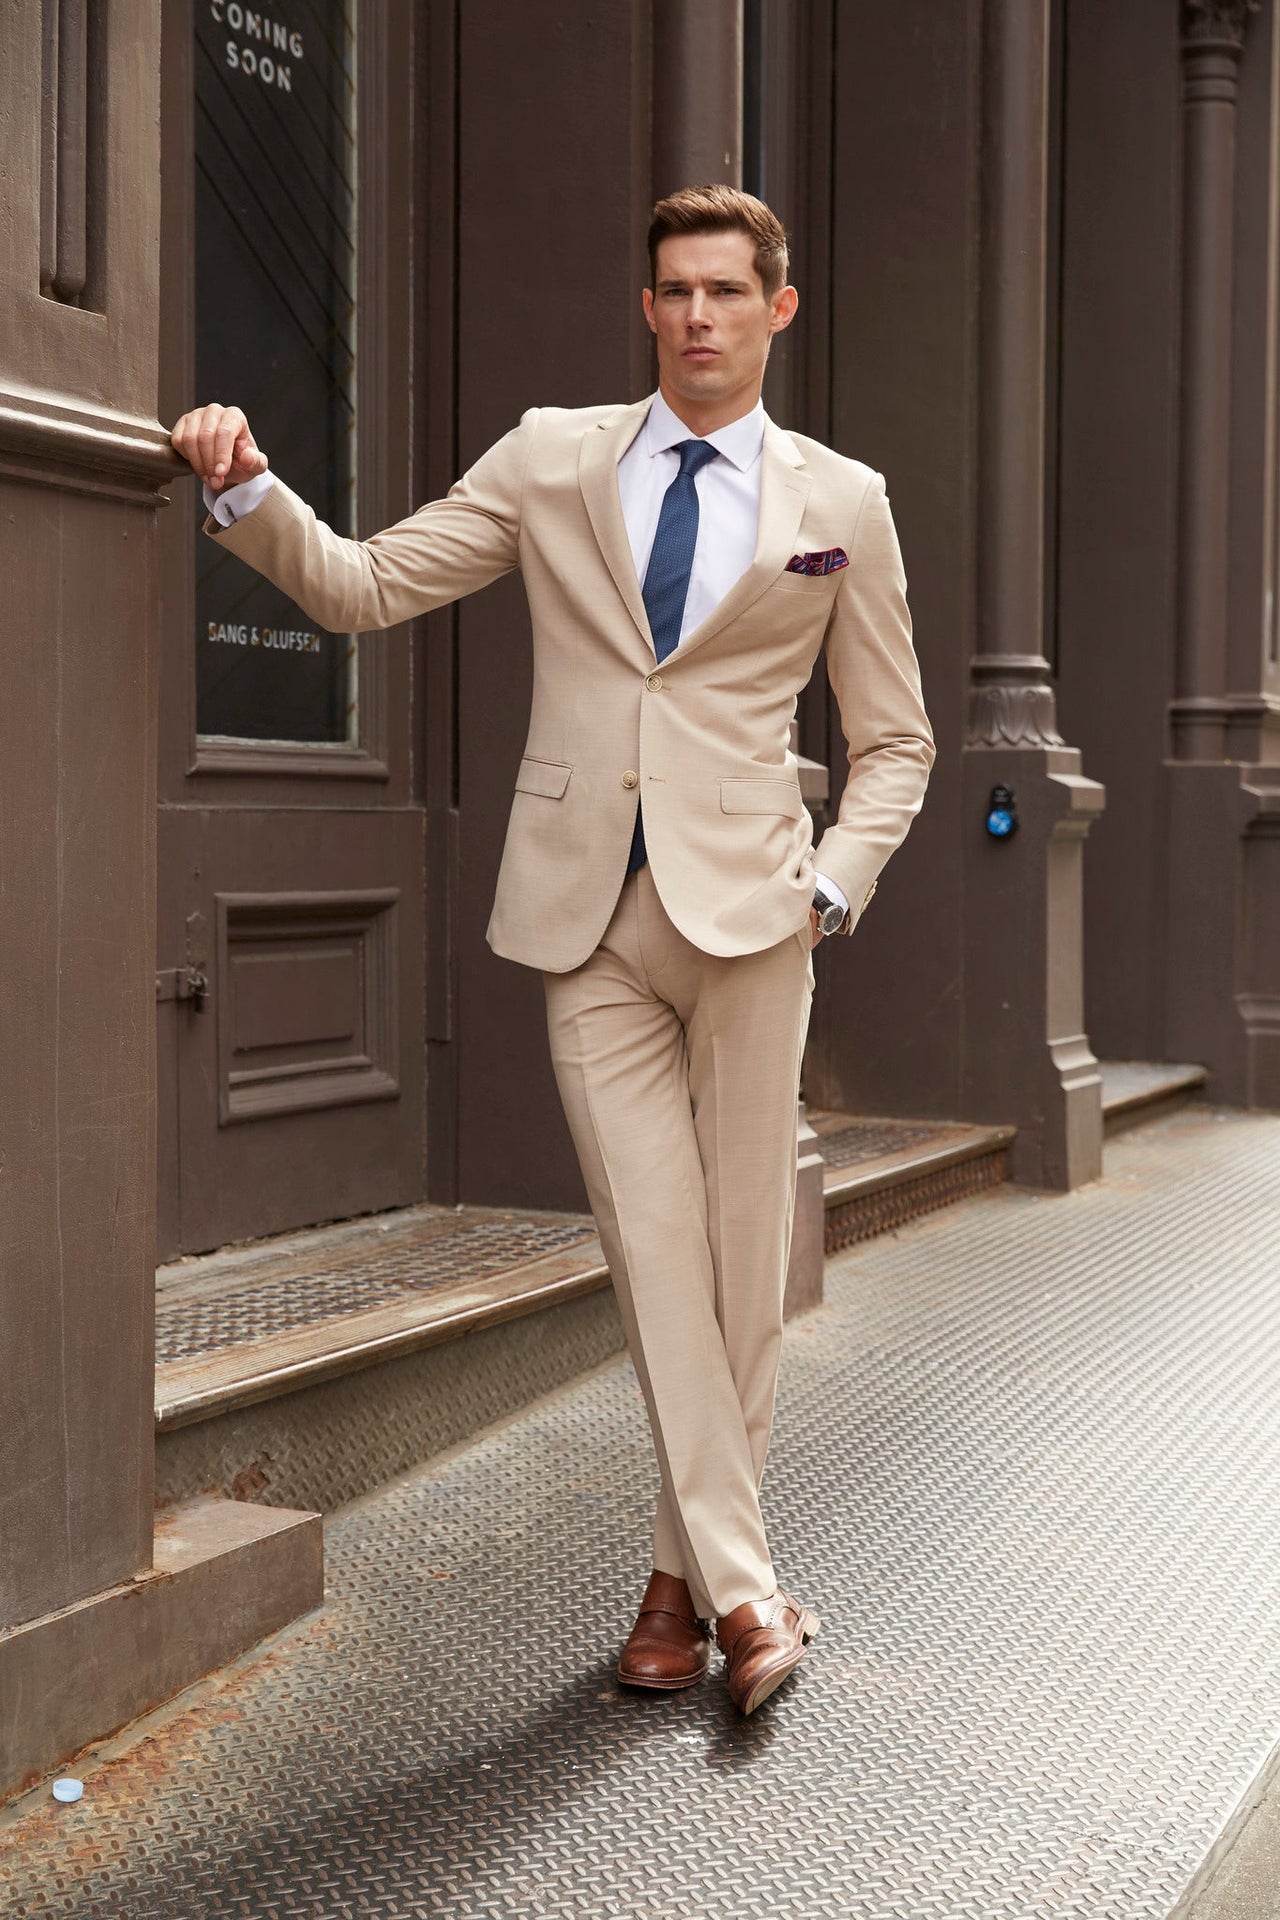 ELEGANT FASHION SUIT Premium Fabric Dress Attractive Men Suits Three Piece Suit  Men Party Suits Suit for Men - Etsy